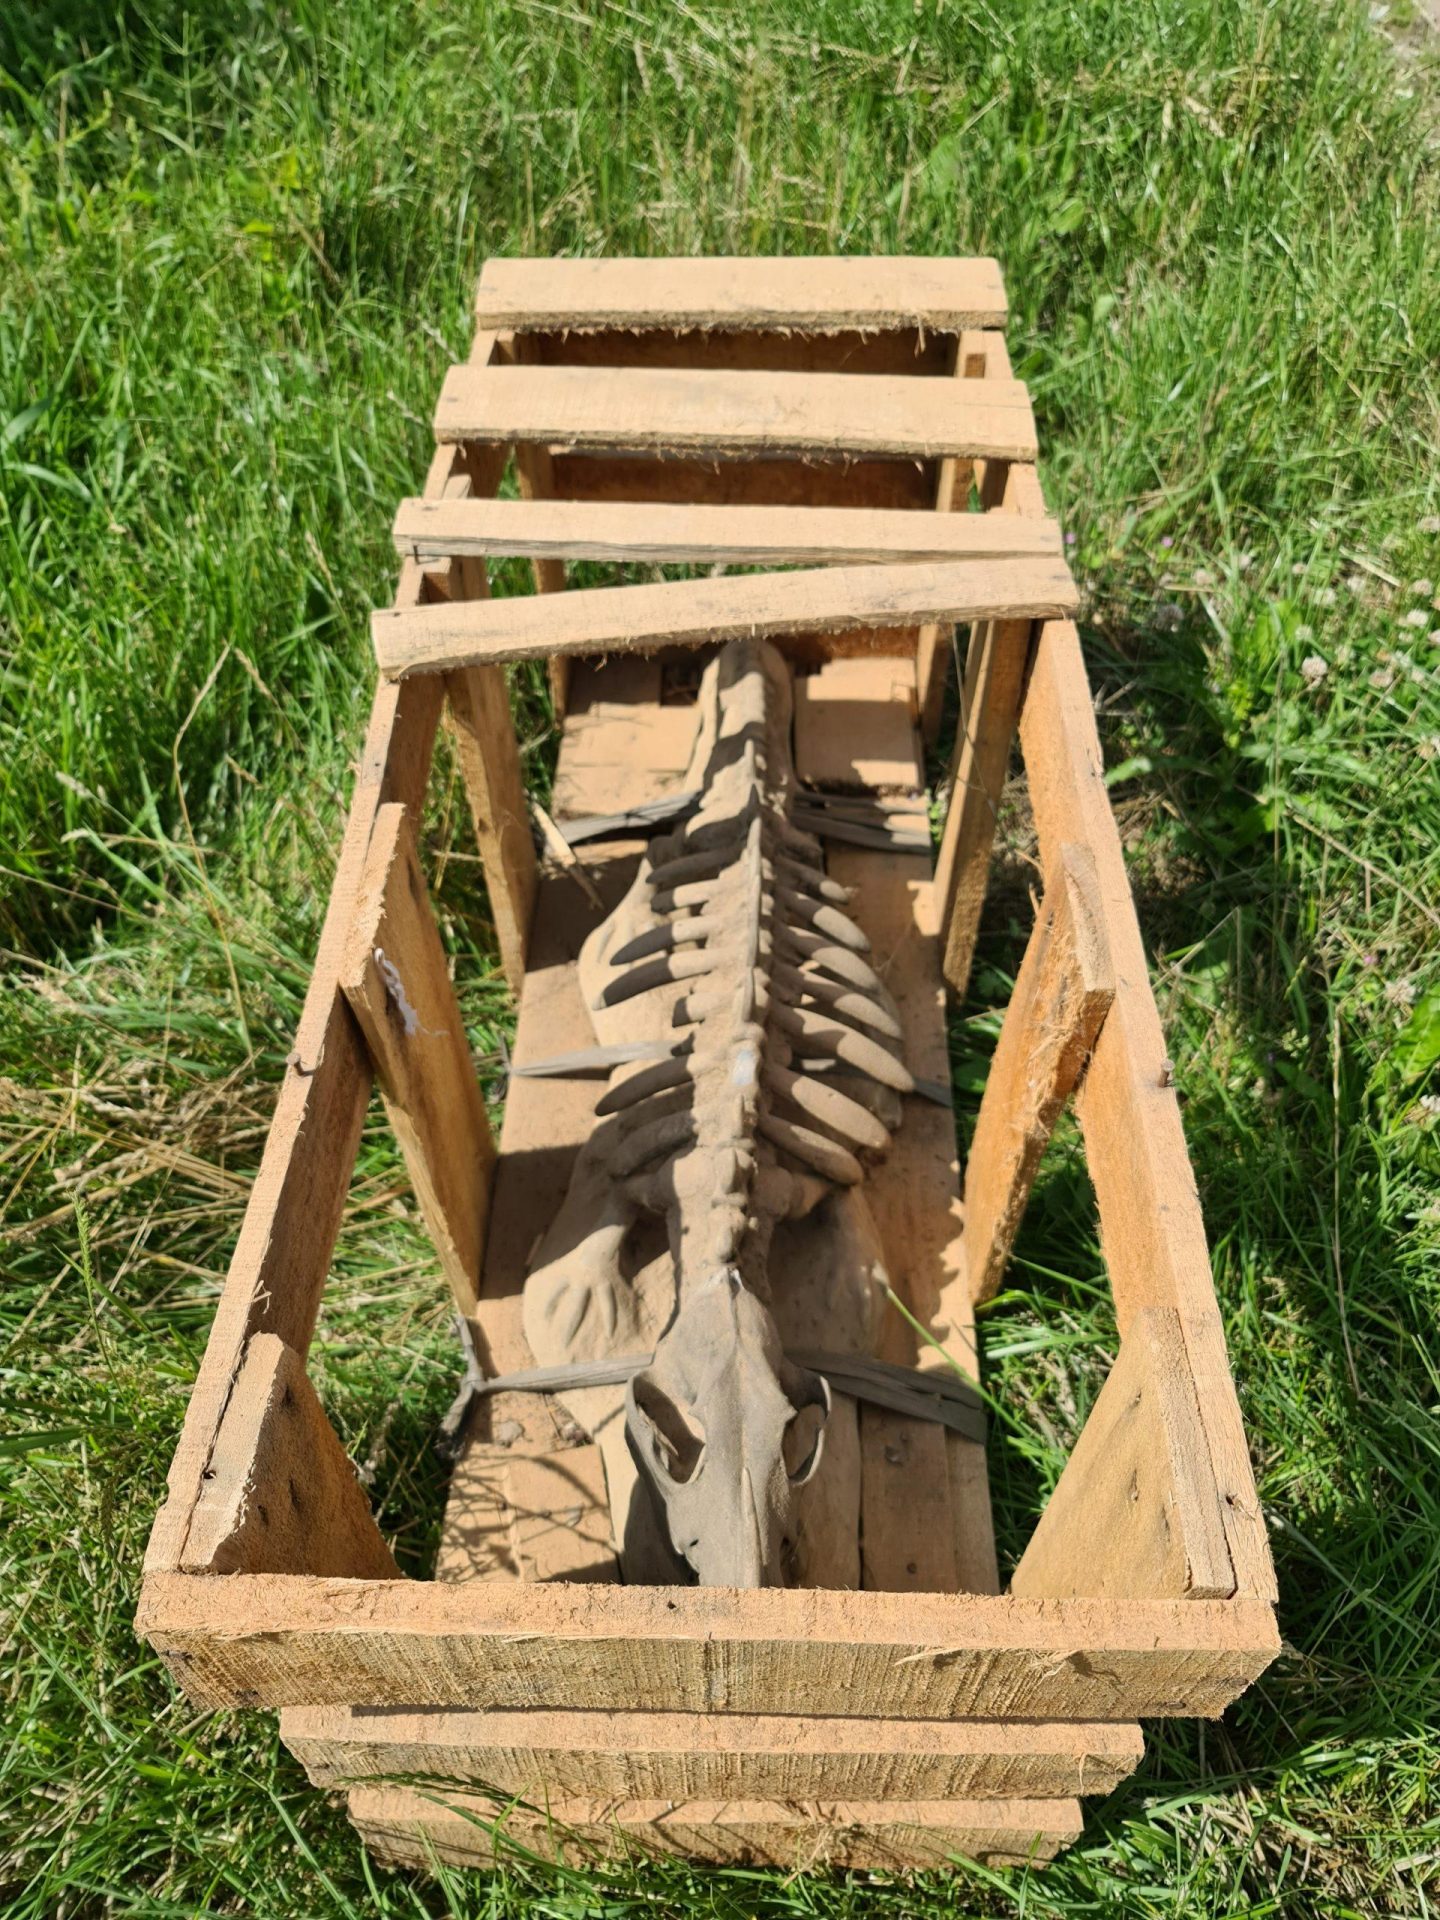 Skelet dier in een houten kist